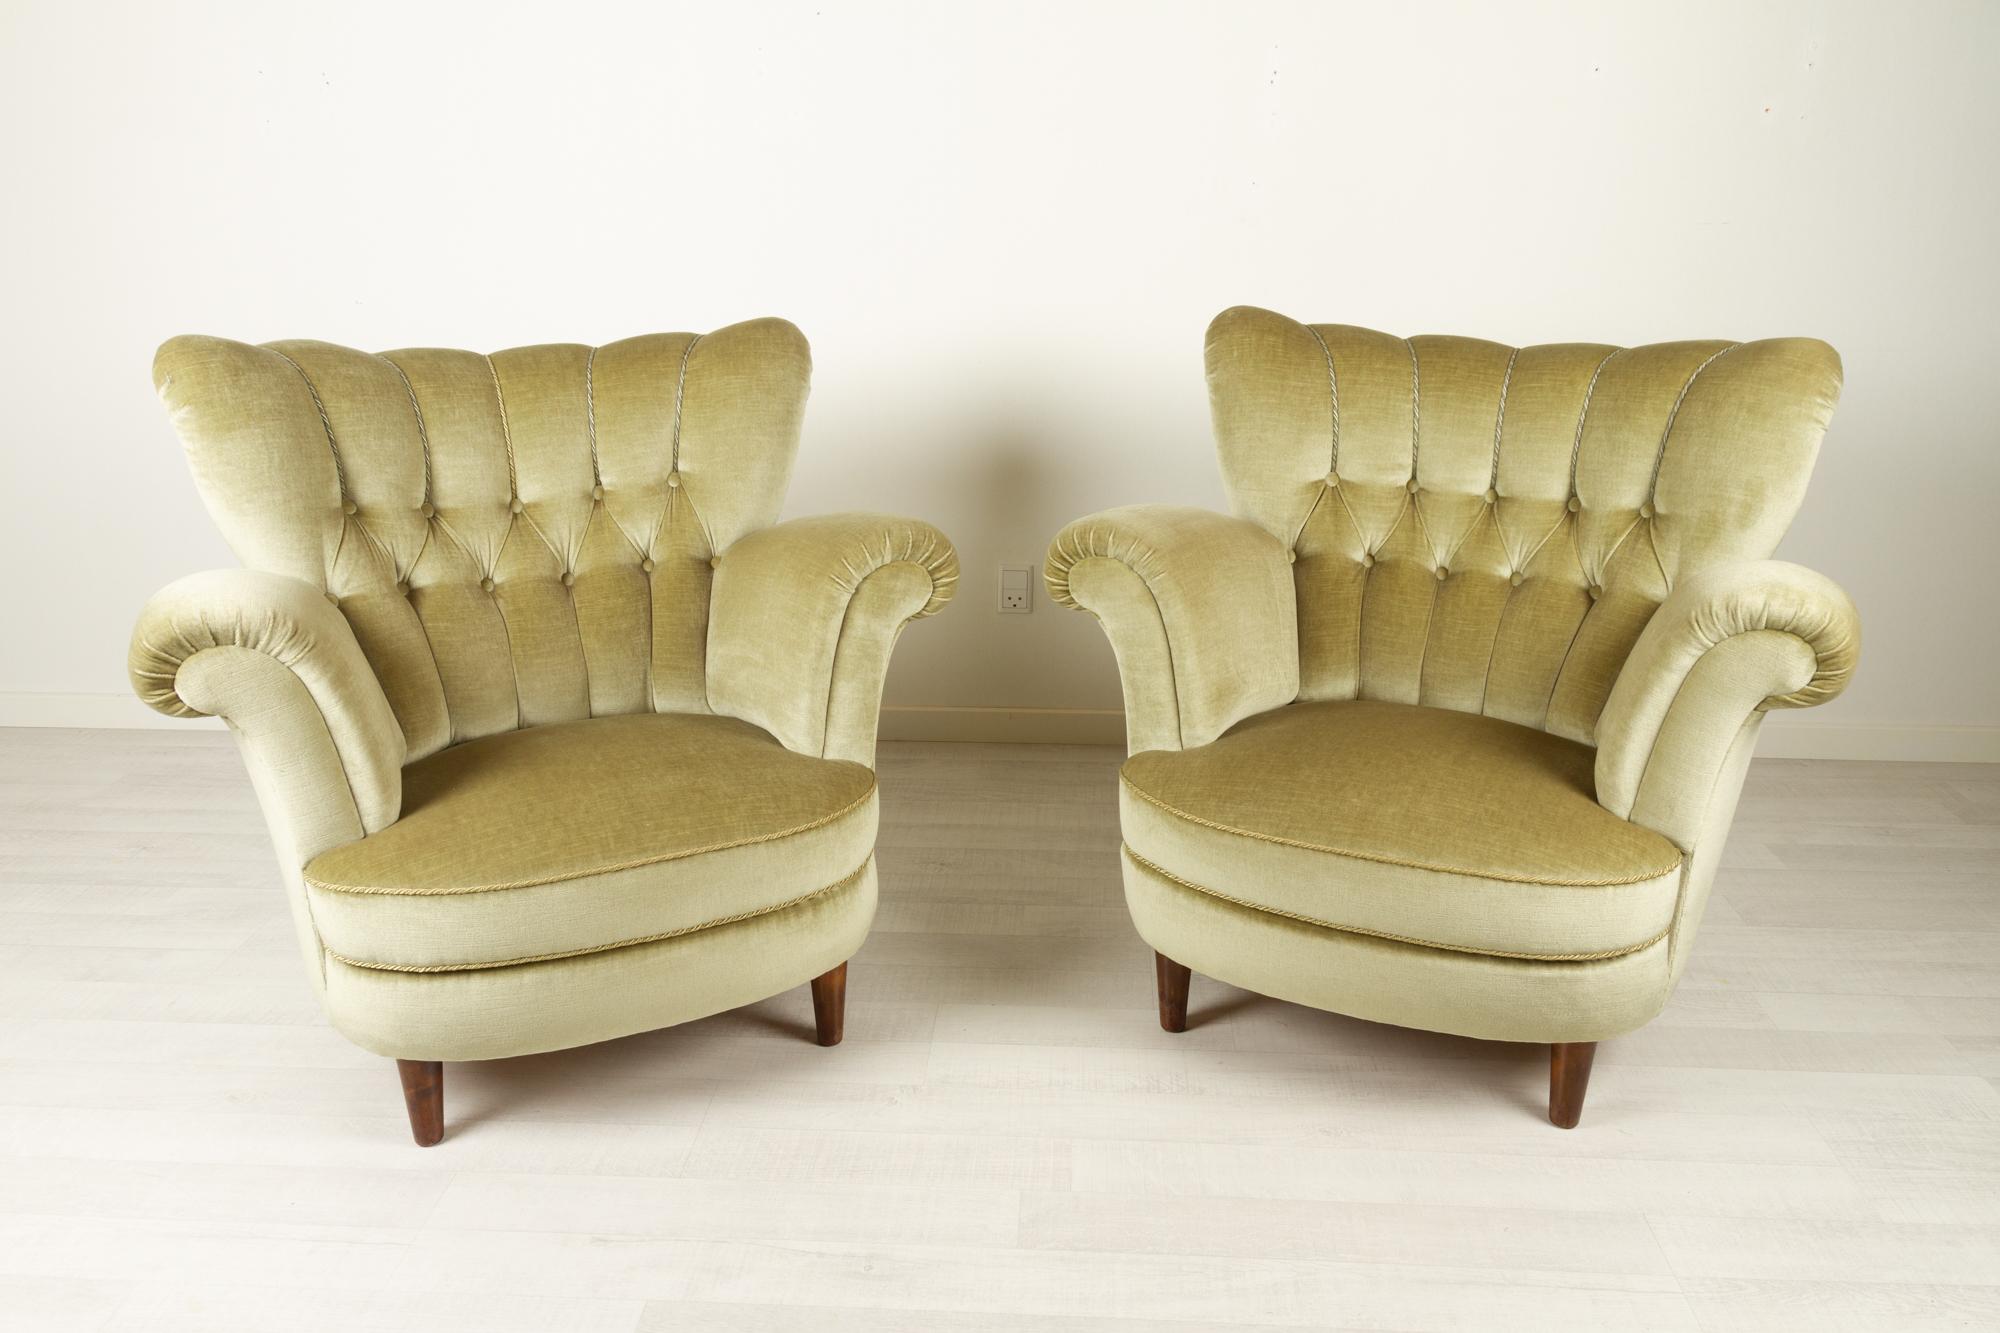 Dänische Velours-Liegestühle 1940er Jahre, 2er-Set
Wunderschönes Paar dänischer Vintage-Flügelsessel mit zartem grünem Samtbezug. Sehr bequem mit tiefem Sitz und breiter, geschwungener Muschelrückenlehne. 
Äußerst guter Originalzustand. Die